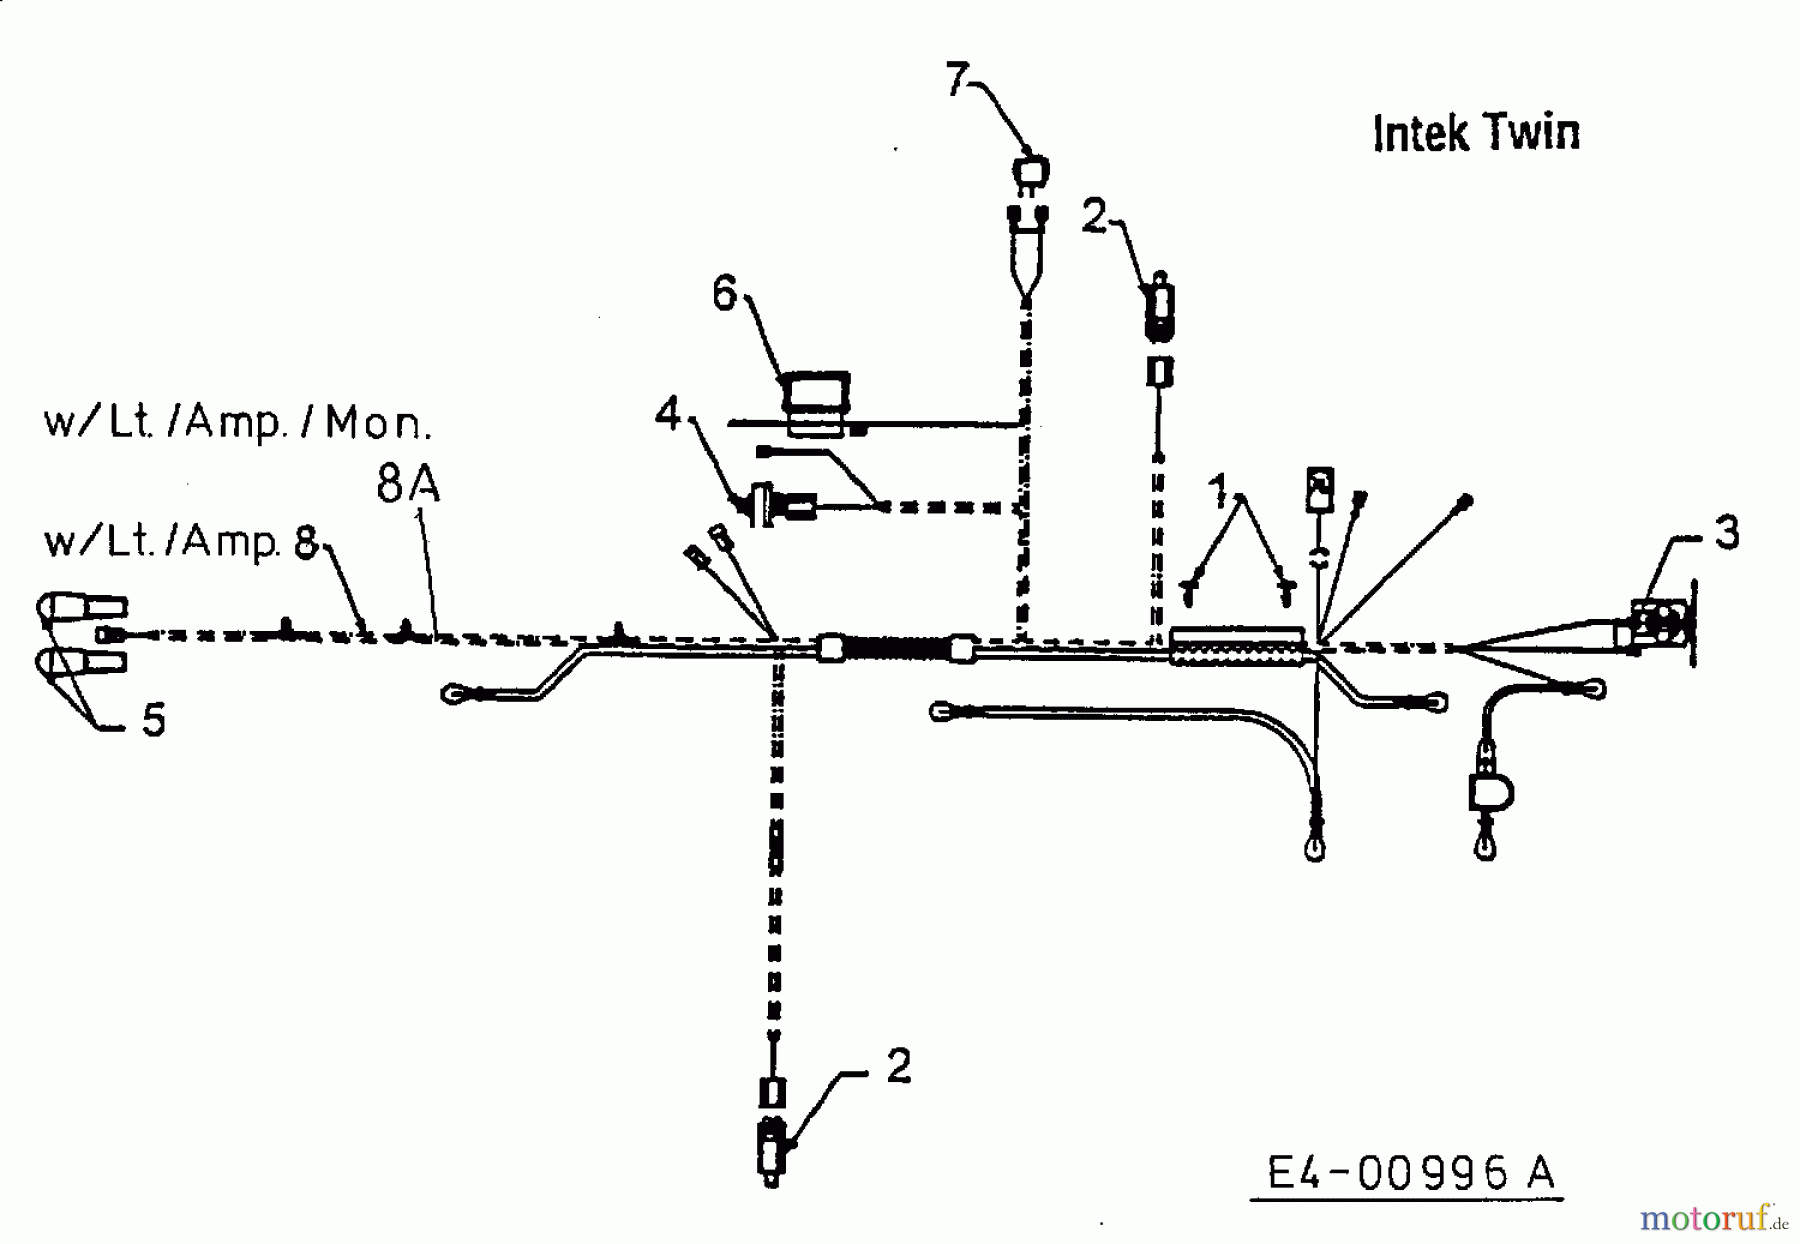  MTD Rasentraktoren H 125 13AH690F678  (1998) Schaltplan Intek Twin